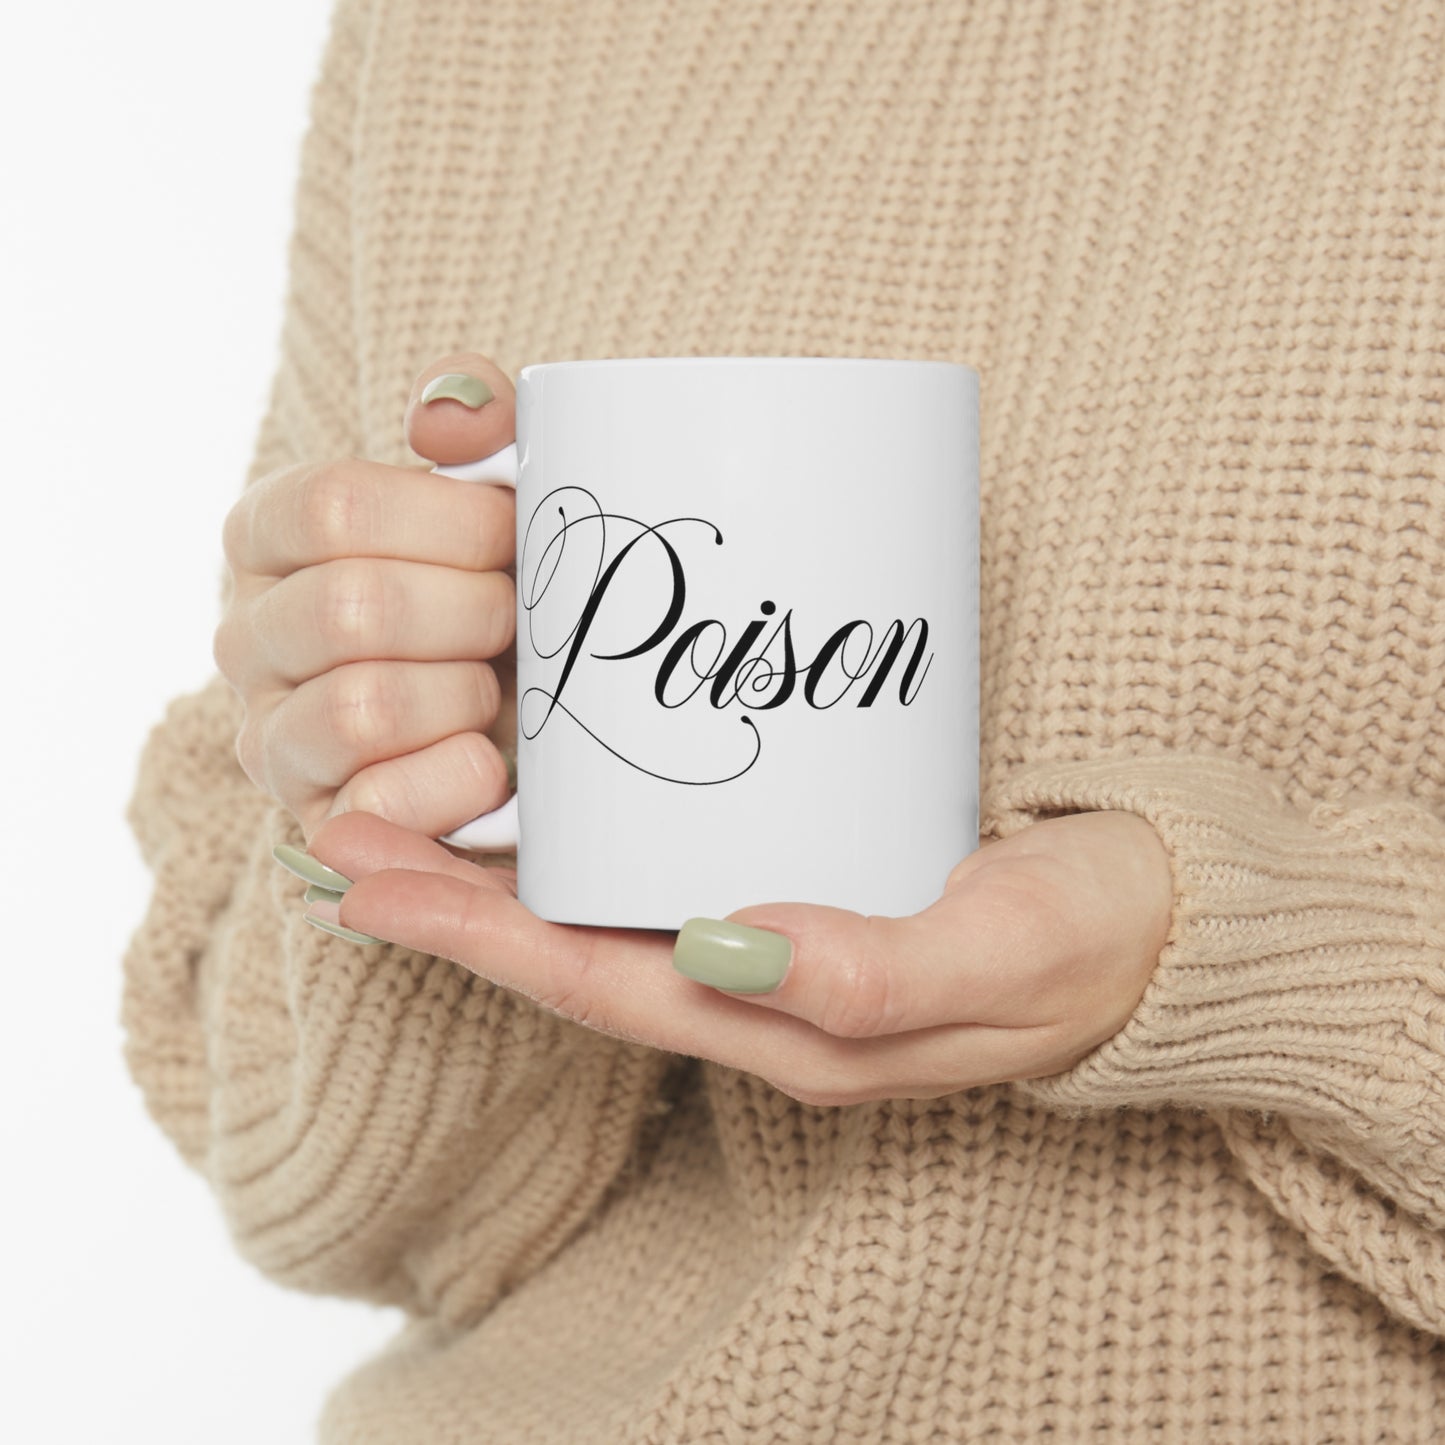 Poison mug